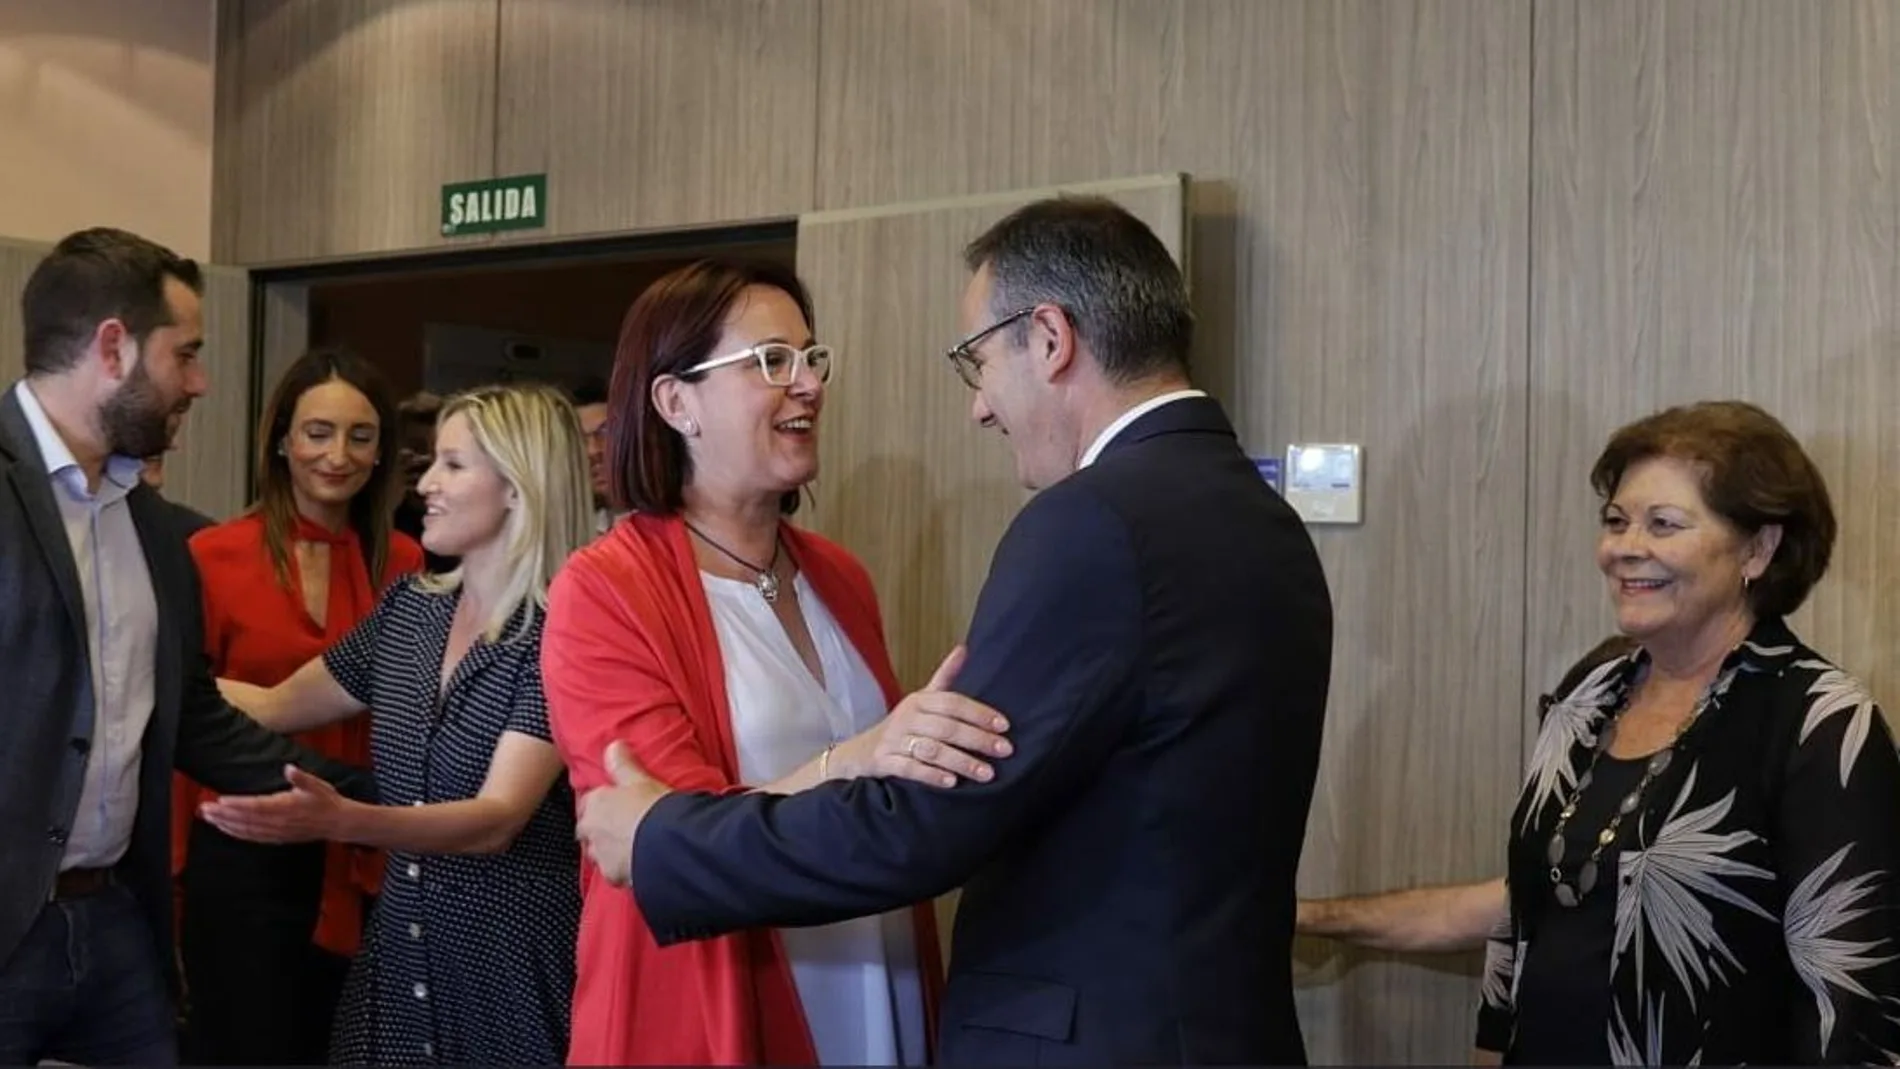 Isabel Franco de Cs con Diego Conesa, del PSOE en la reunión del viernes. LA RAZÓN